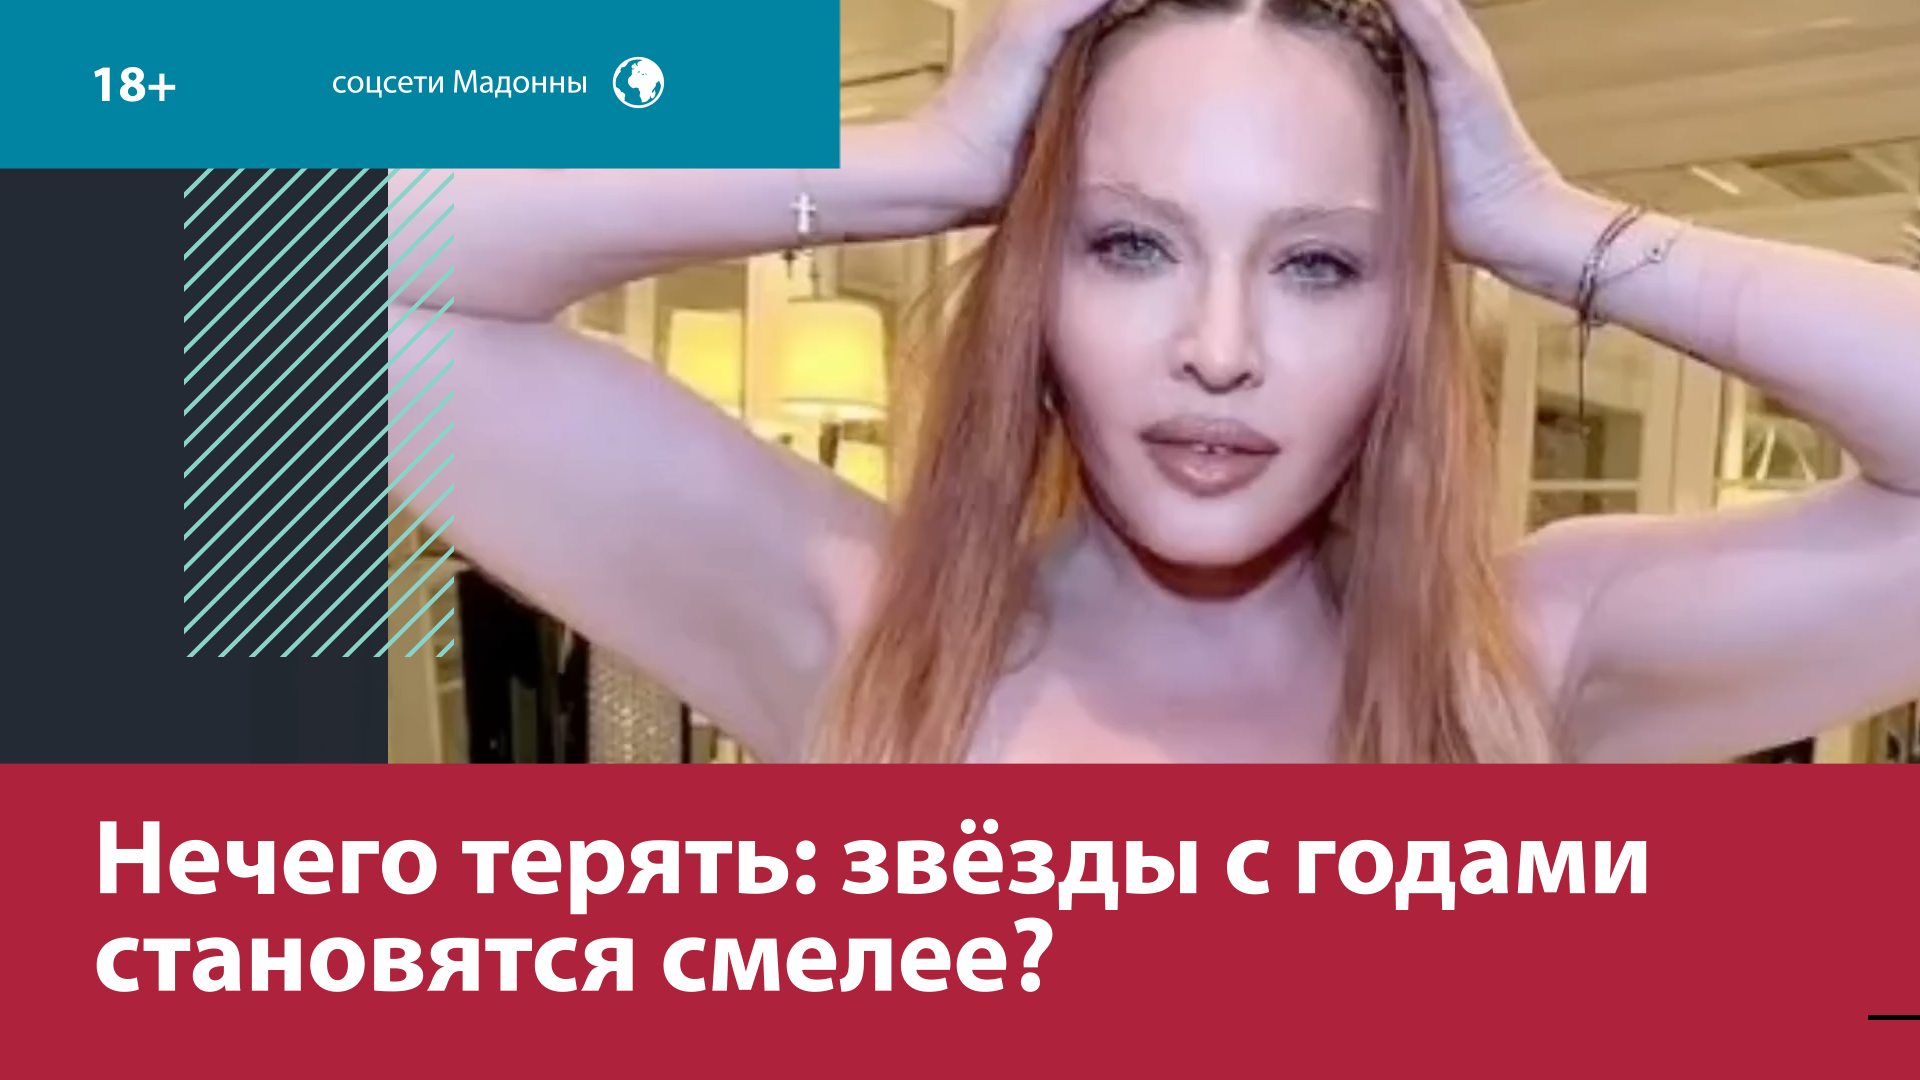 Зачем Мадонна танцует твёрк с алмазными зубами? – Москва FM